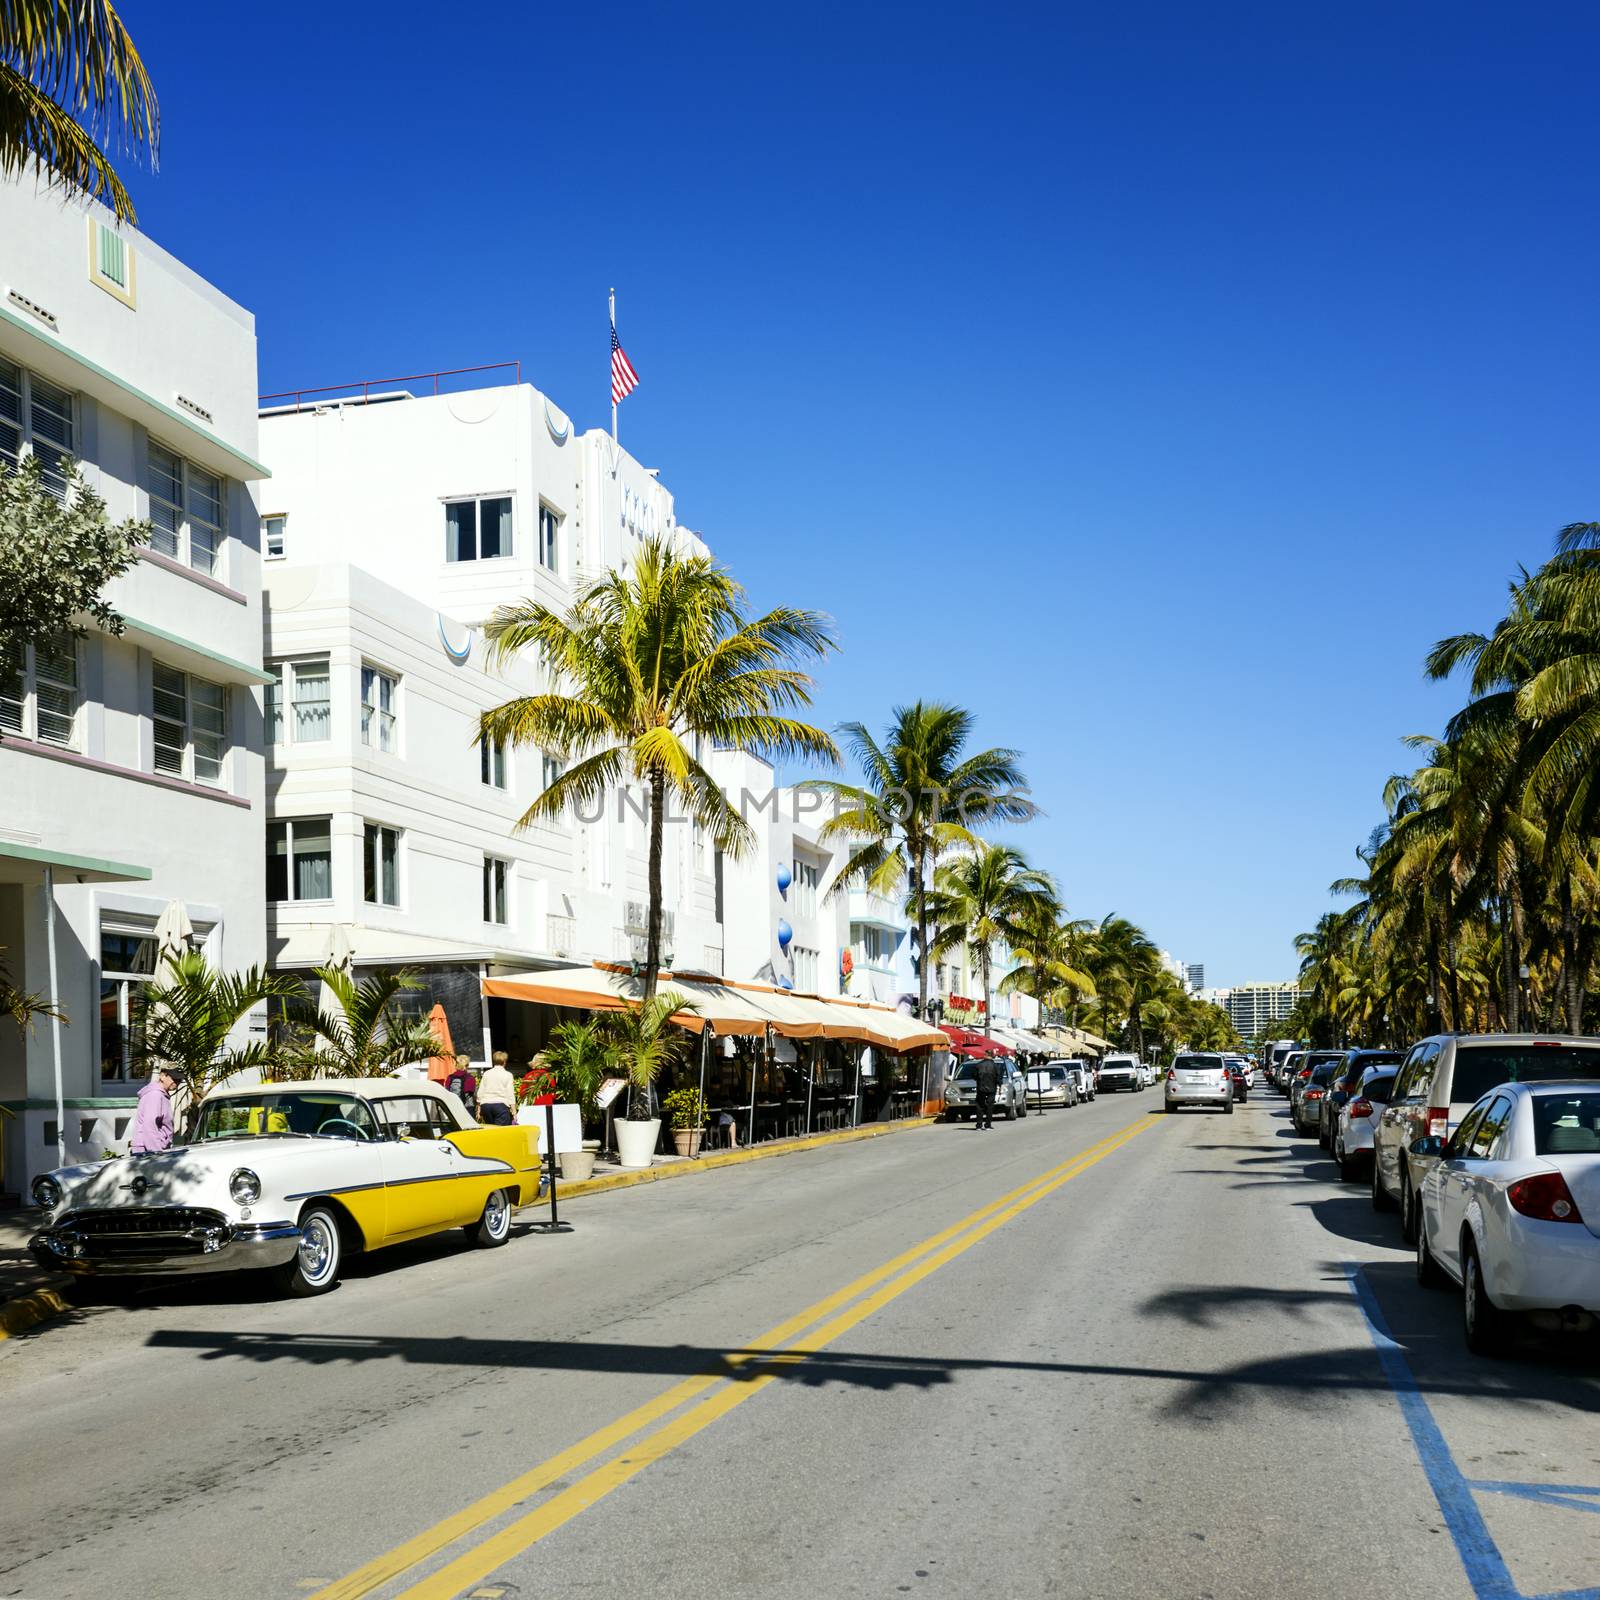 Miami beach, Floride, USA by ventdusud